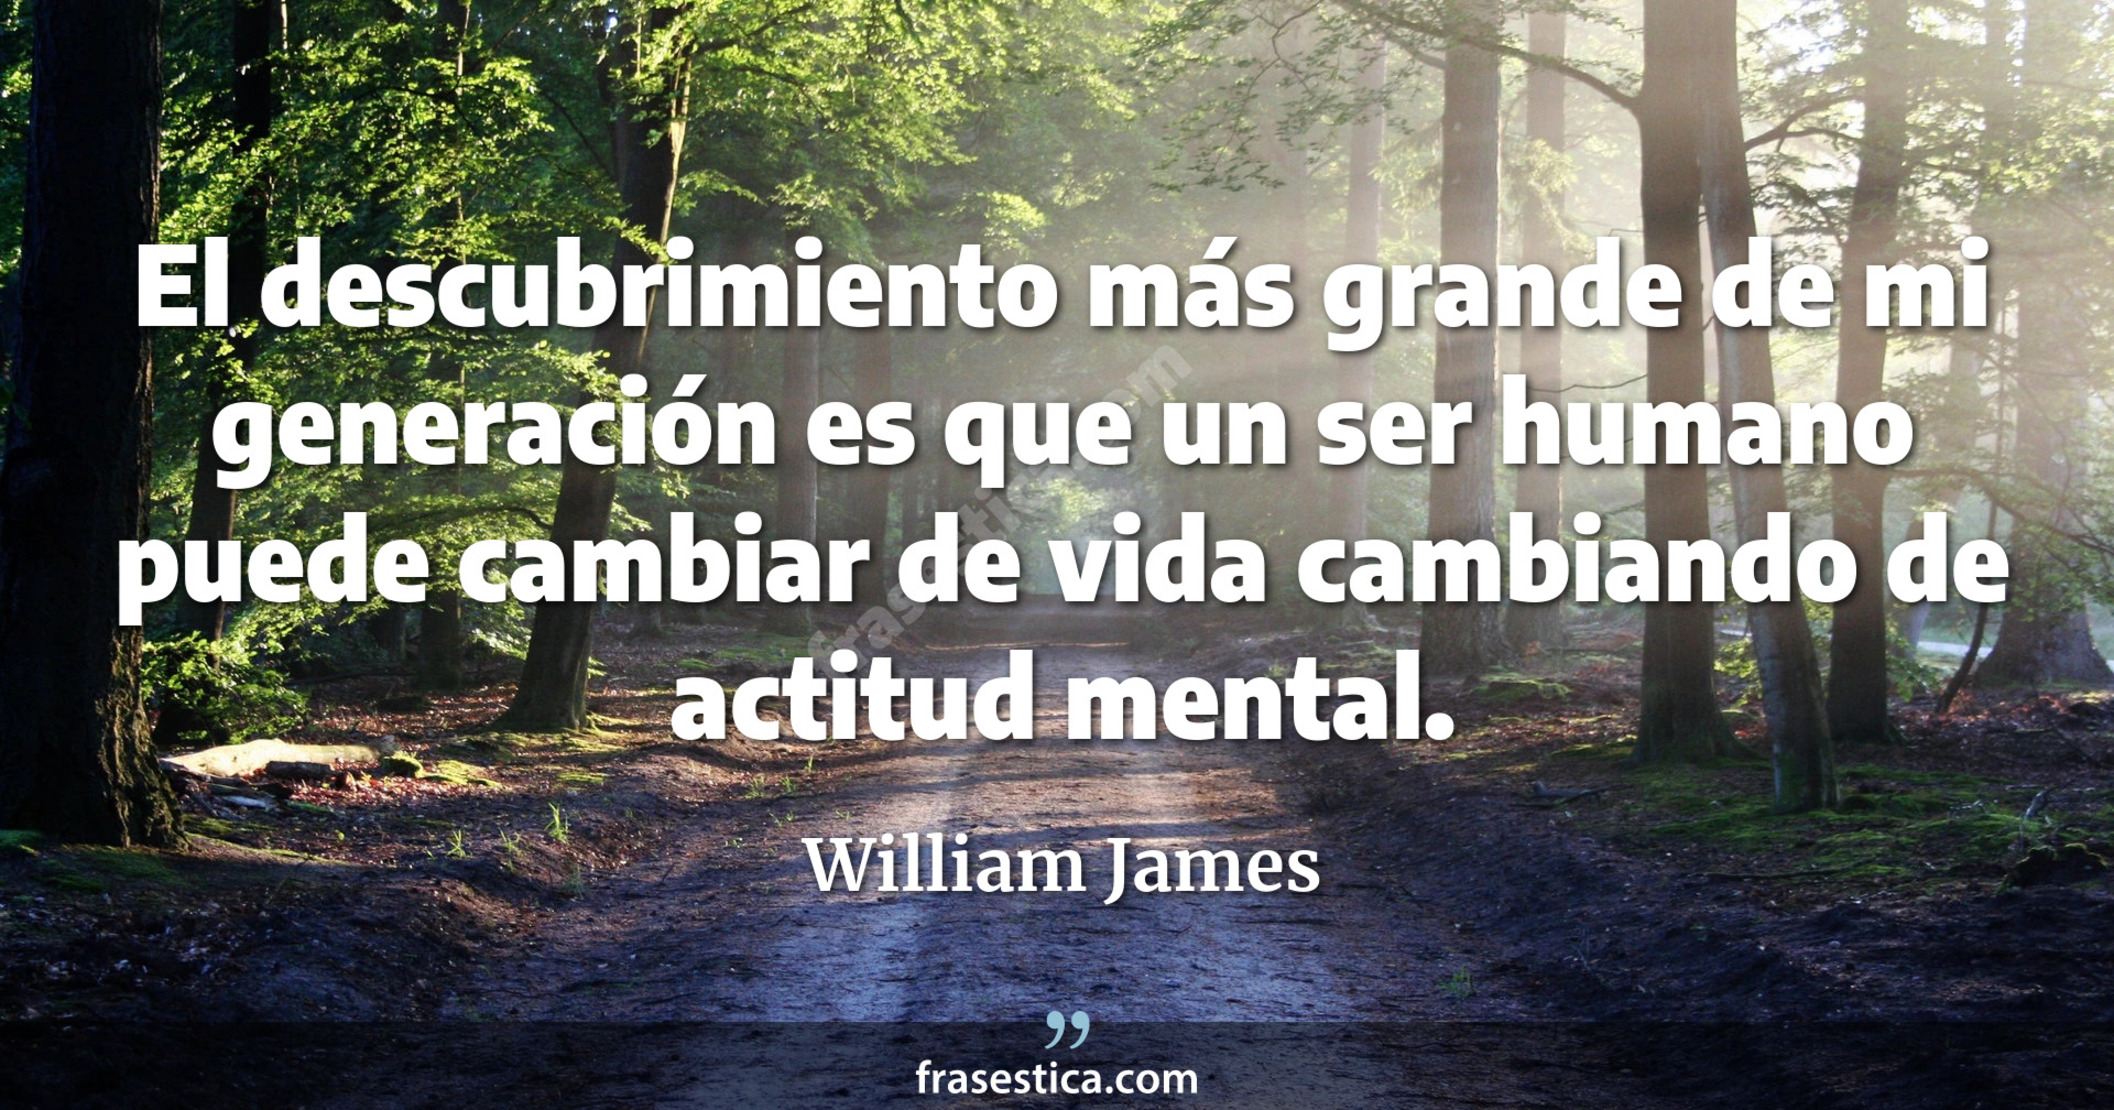 El descubrimiento más grande de mi generación es que un ser humano puede cambiar de vida cambiando de actitud mental. - William James